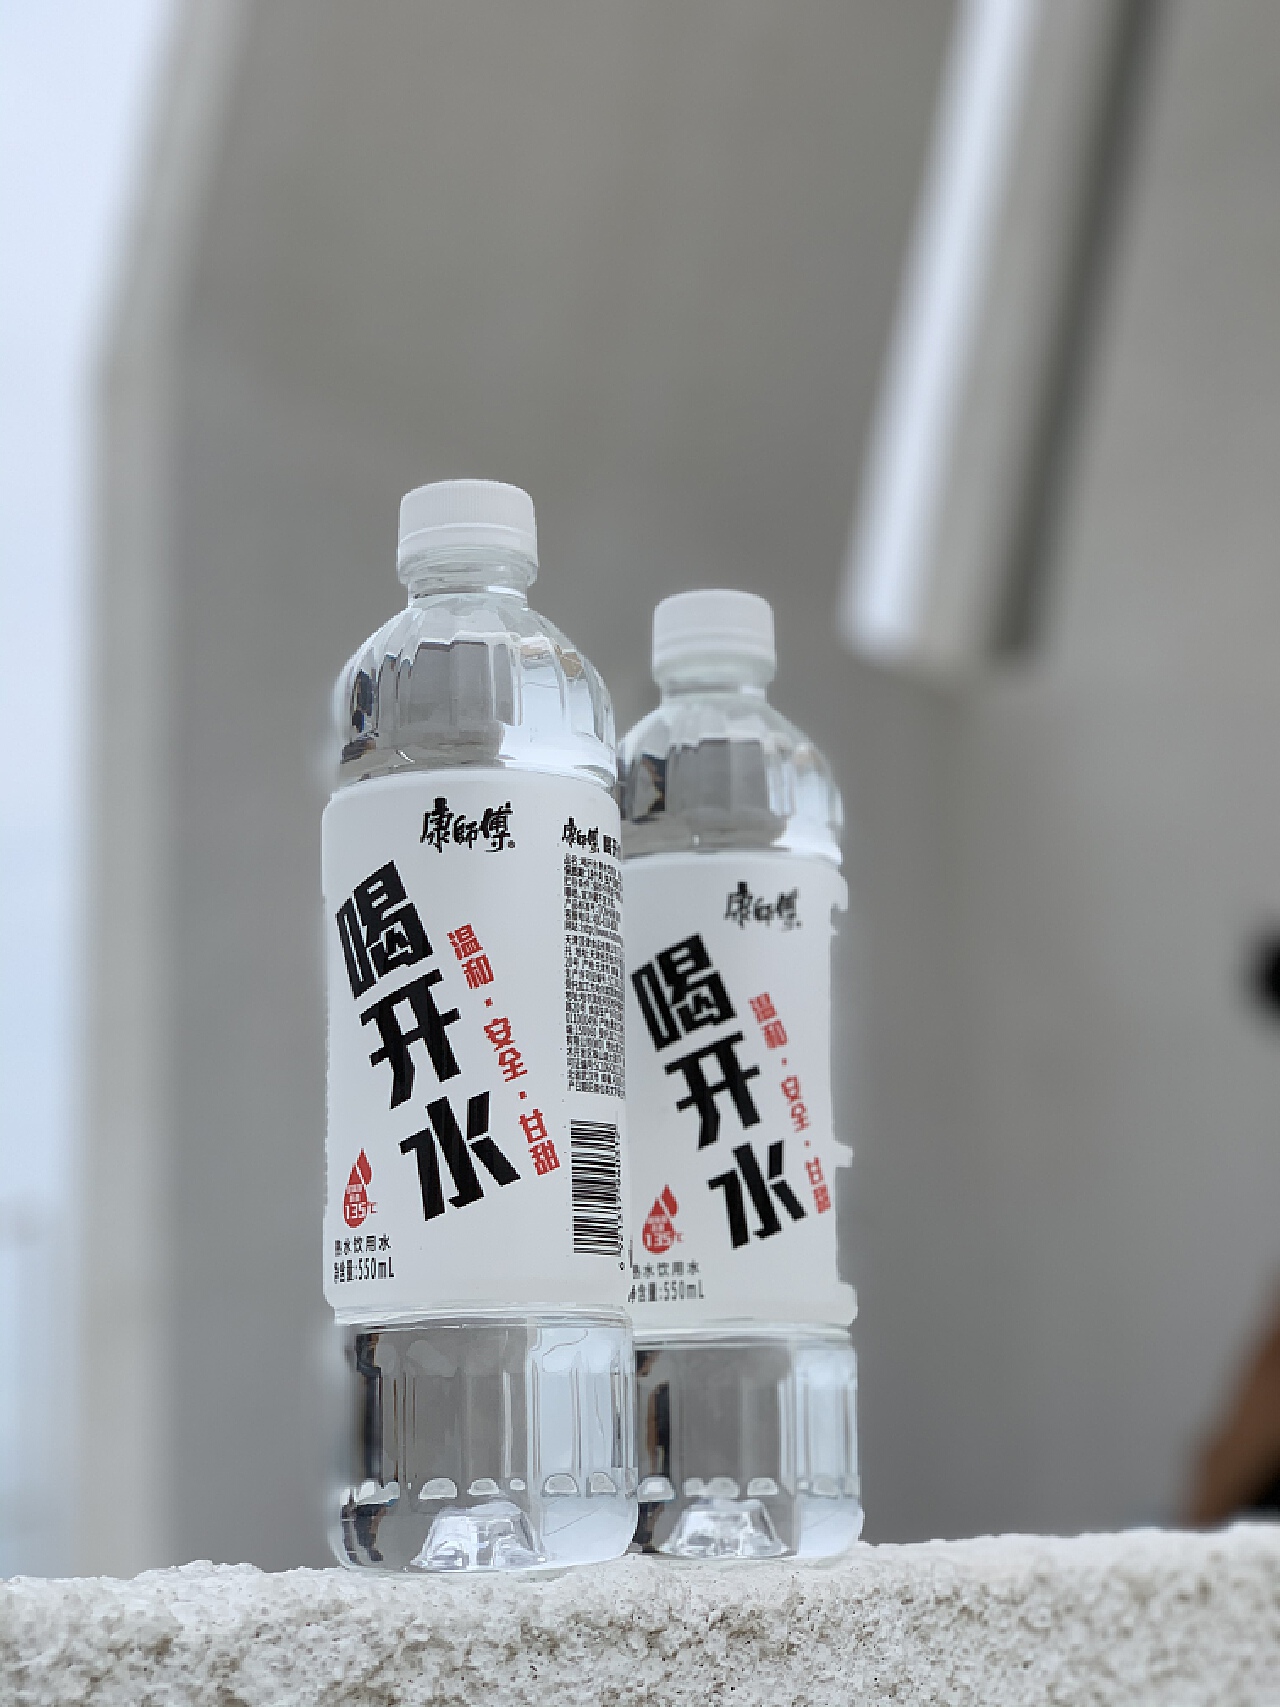 食品饮料品牌「康师傅」“喝开水”推出 5L 家庭装 - 广告人干货库